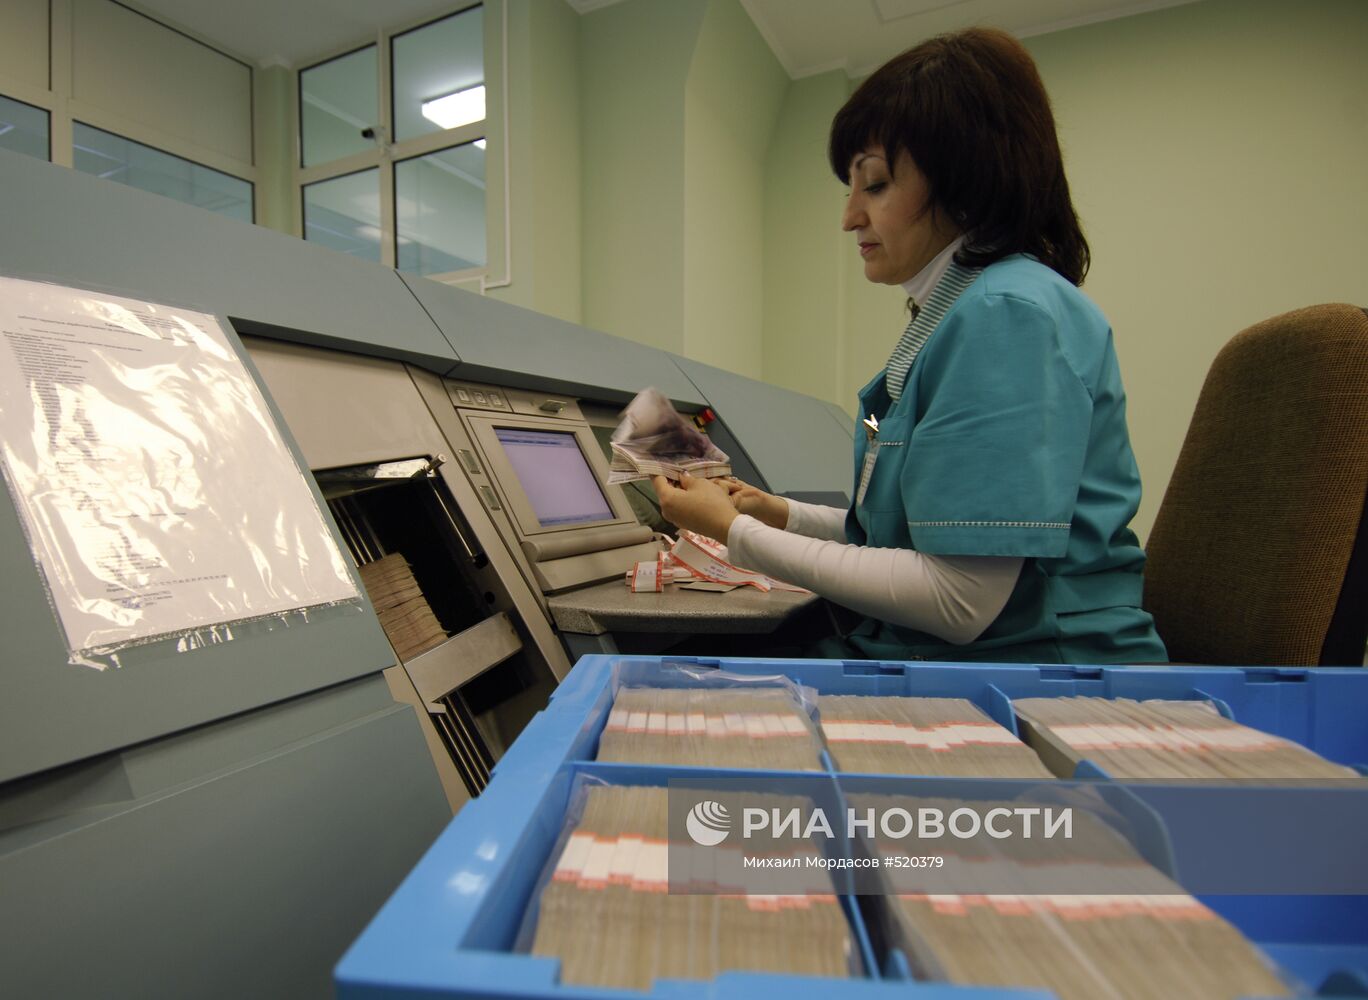 Открытие Расчетно-кассового центра ЦБ РФ в Краснодаре